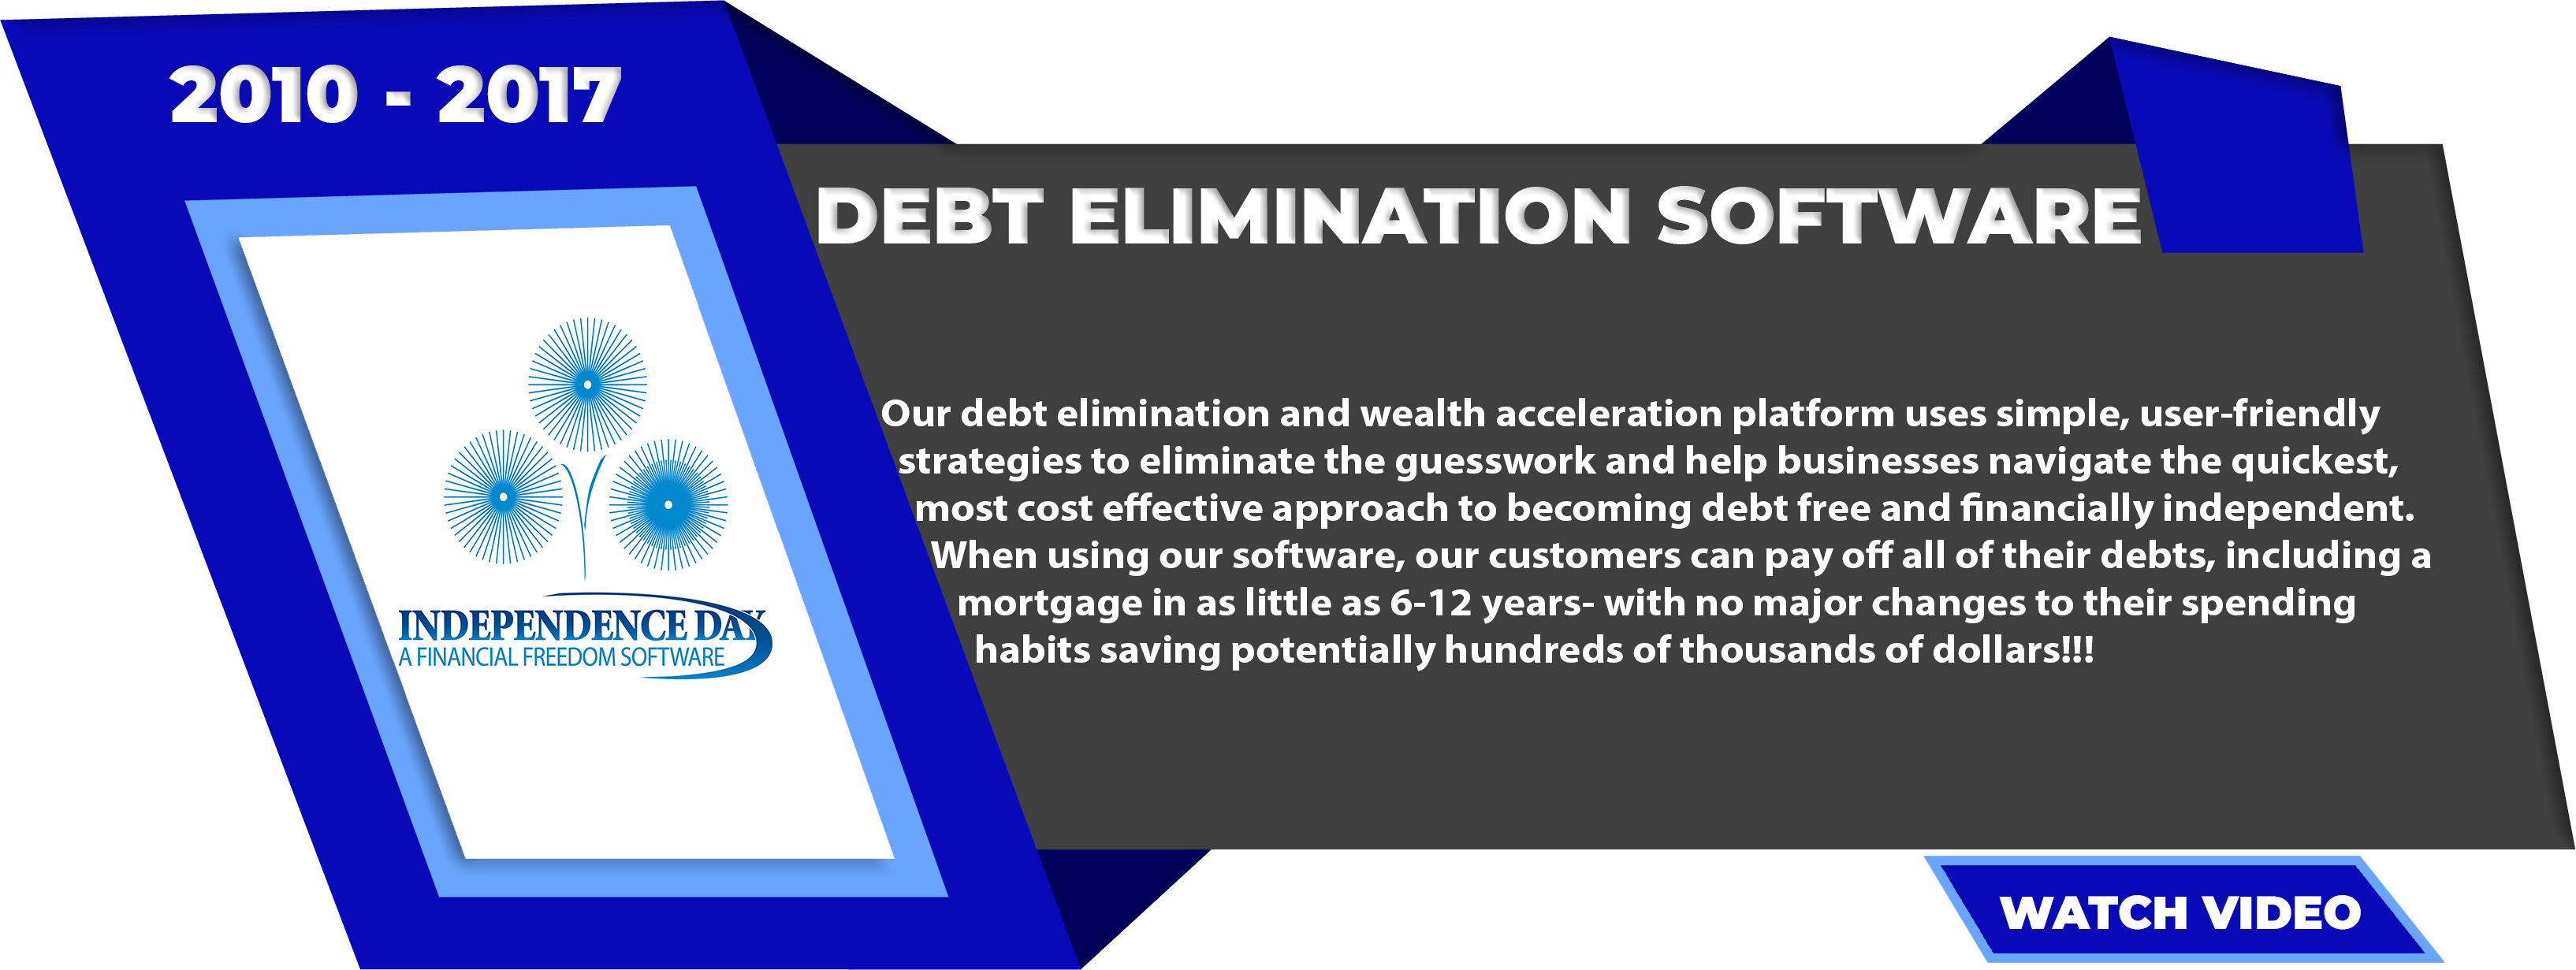 Debt-Elimination-Software-2010-Present-1